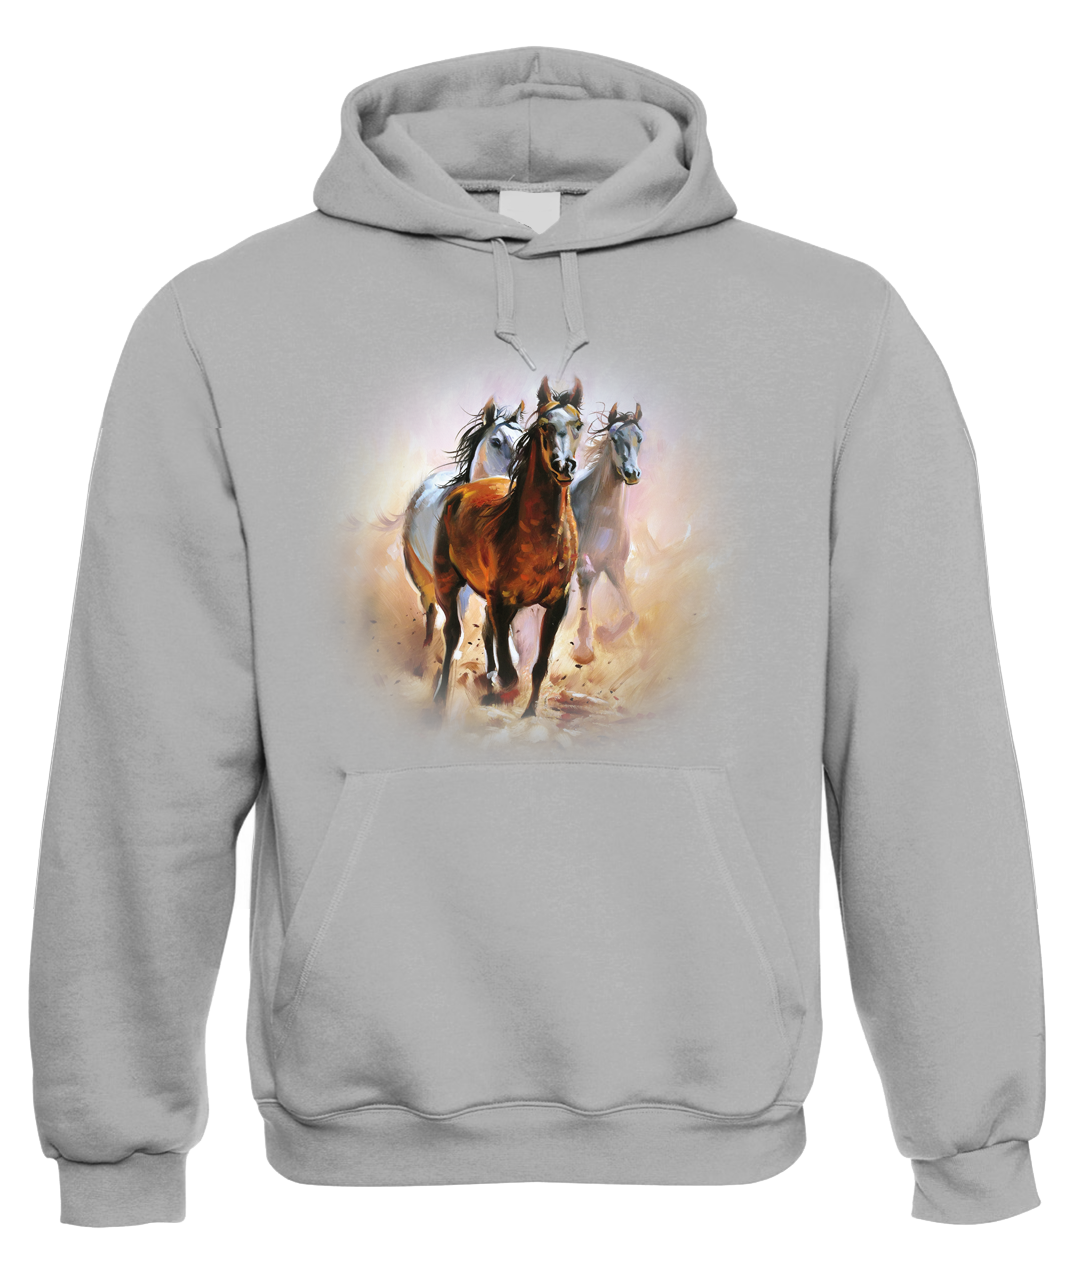 Mikina s koněm - Malované koně Velikost: L, Barva: Šedá